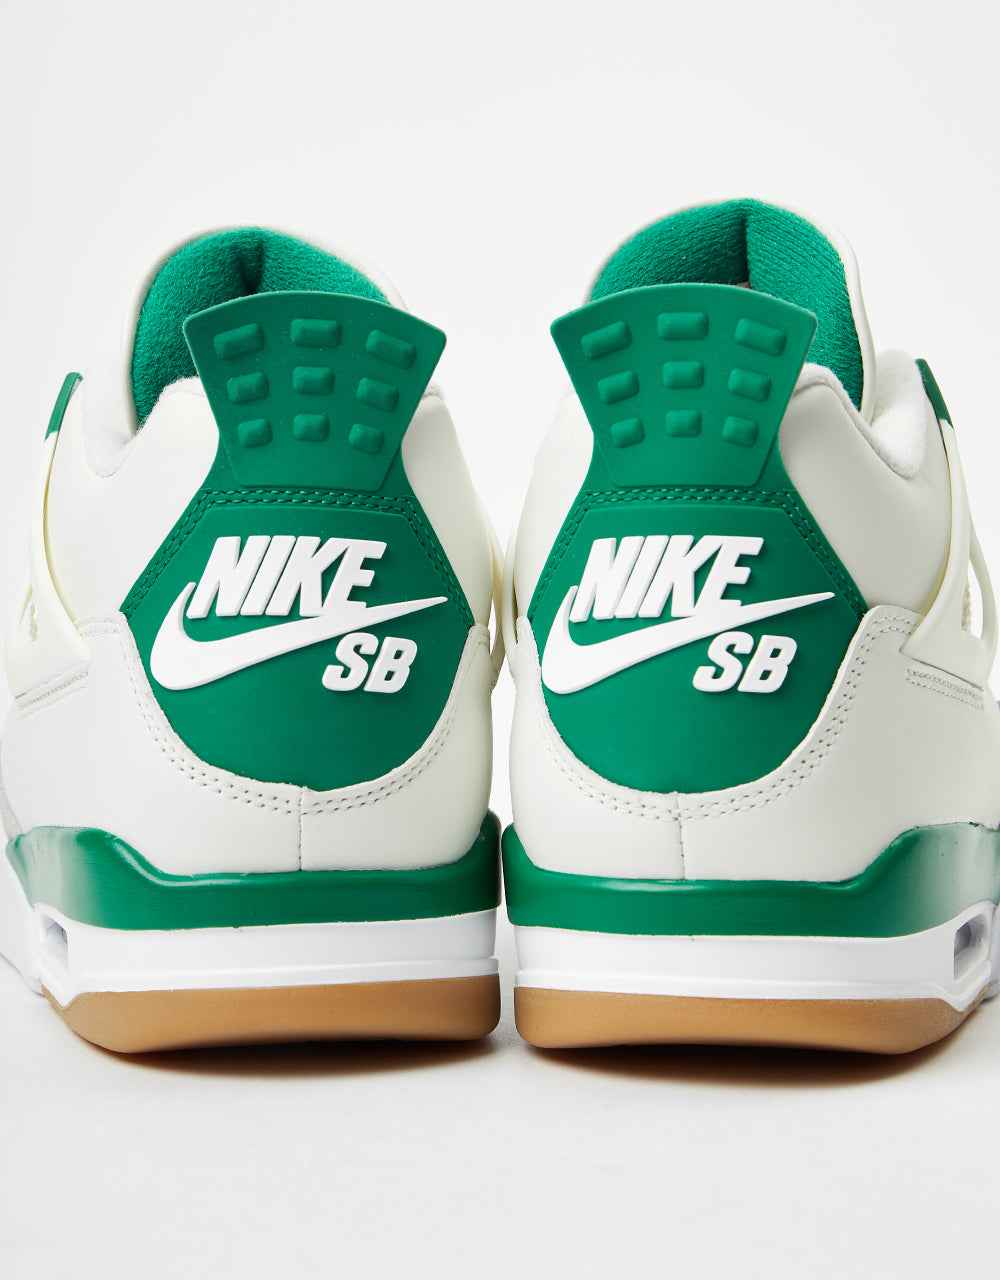 Nike SB Air Jordan 4 Retro SP Skate Shoes - Sail/Pine Green/Neutral ...